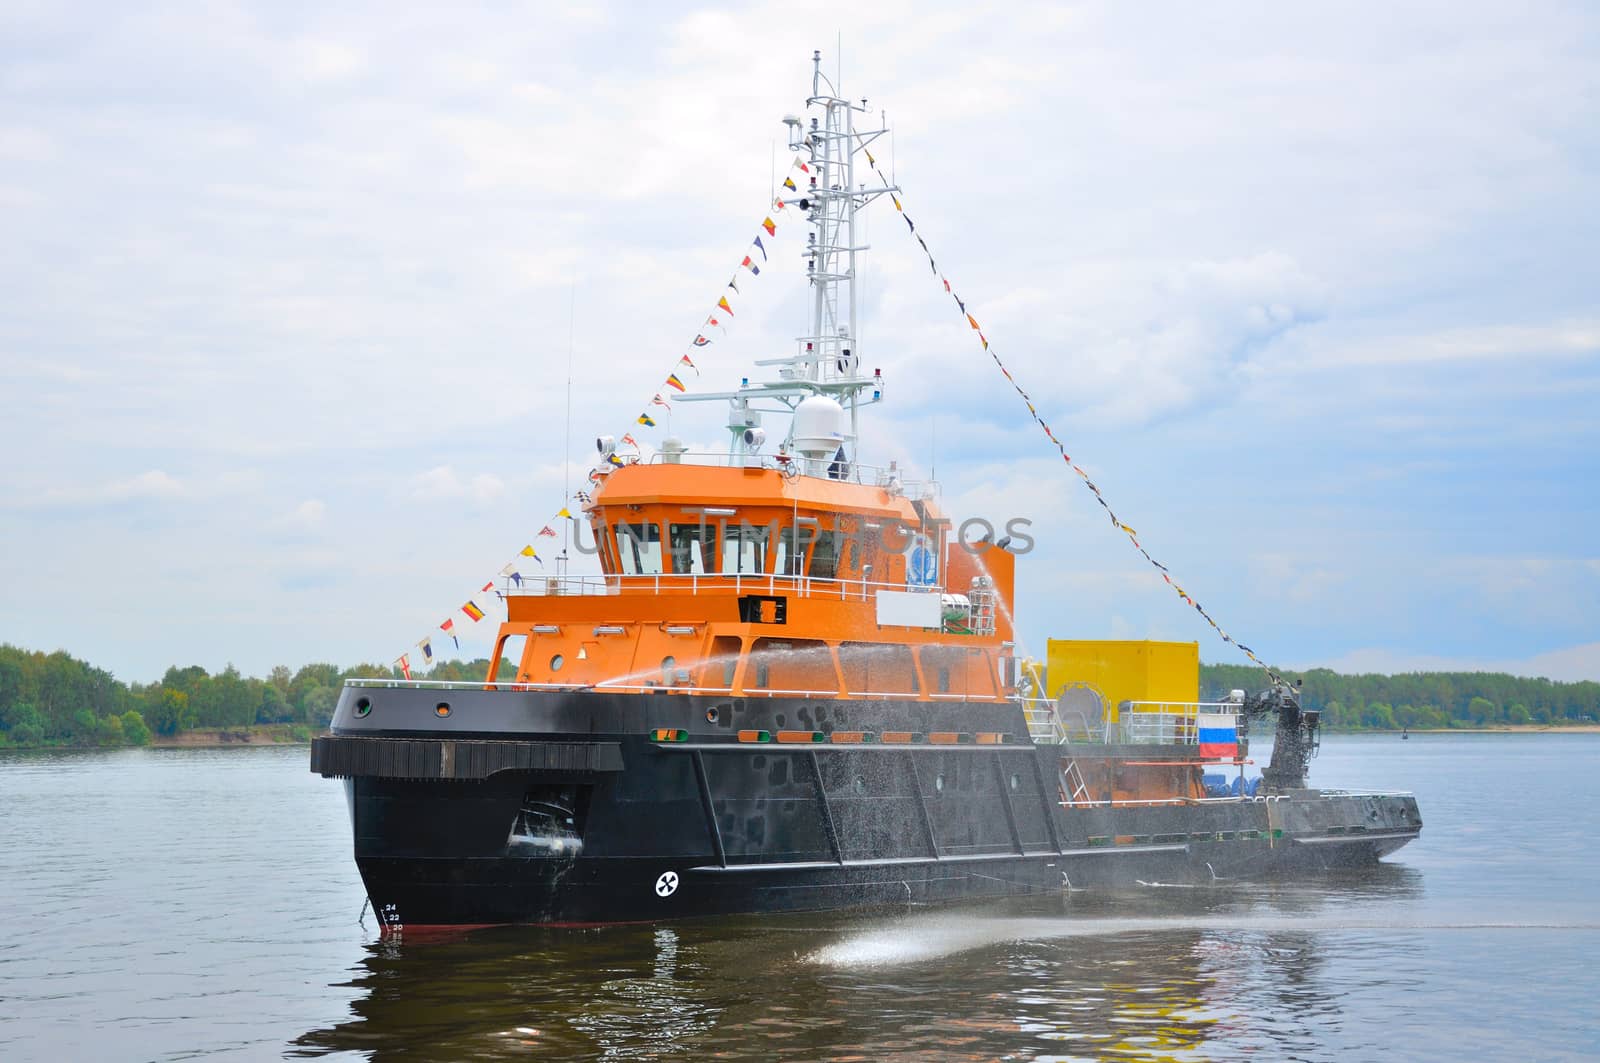 Black-orange ship in Volga river, Yaroslavl, Russia by Eagle2308